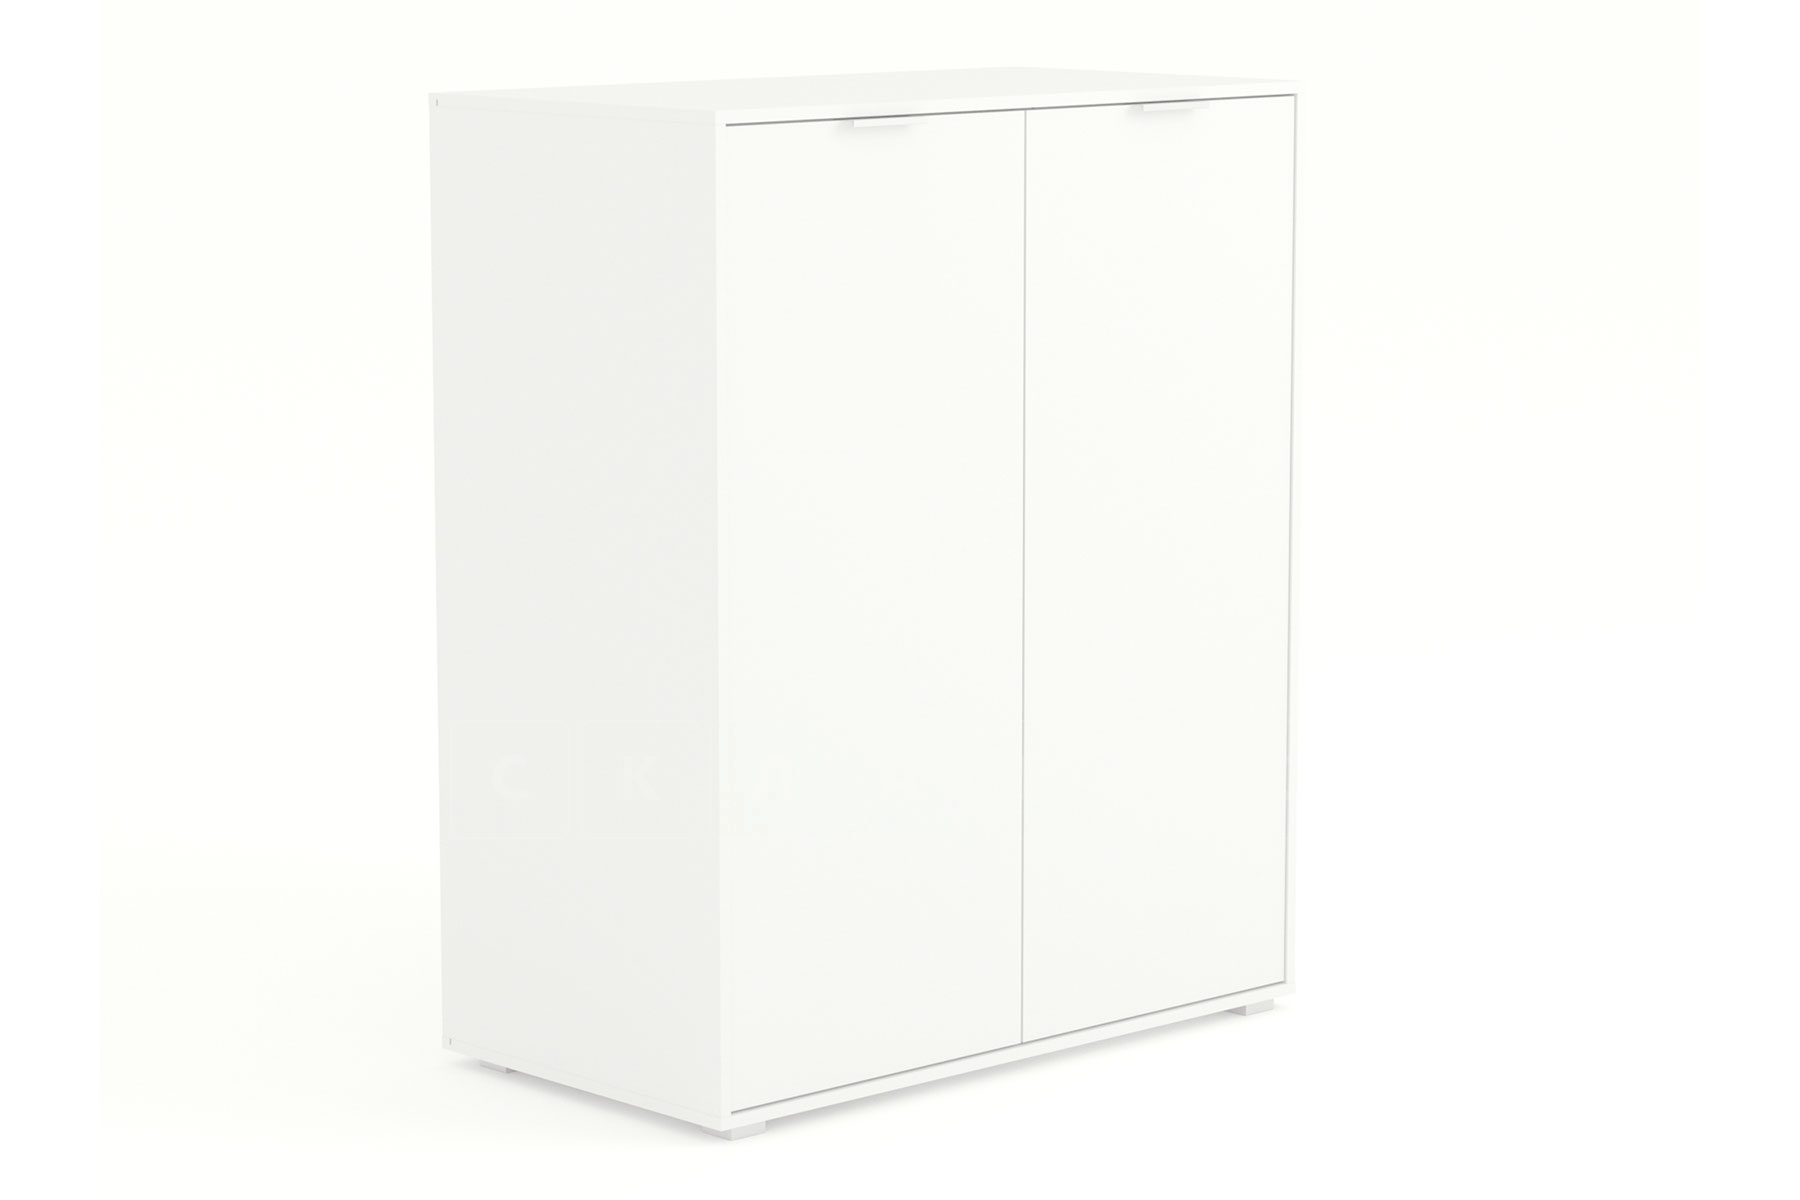 Комод Лакост двухдверный белый фото 1 | интернет-магазин Складно